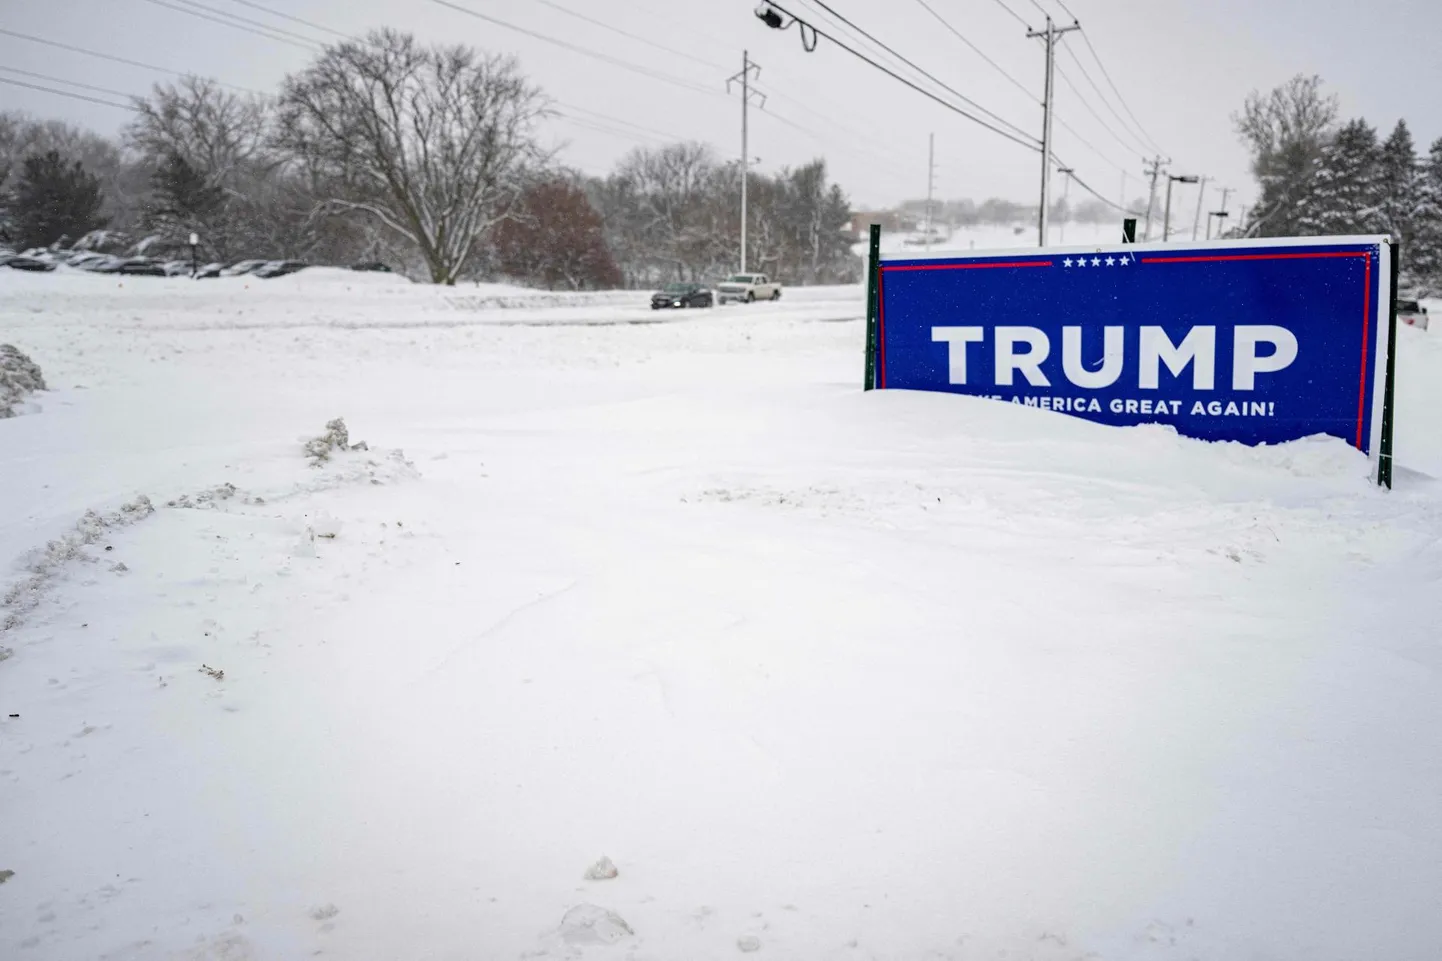 Iowa eelvalimised toimusid äärmusliku külma ja lumetormide tingimustes. Kuni 30-kraadise pakasega päev võis olla Ühendriikide presidendivalimiste ajaloo külmim.